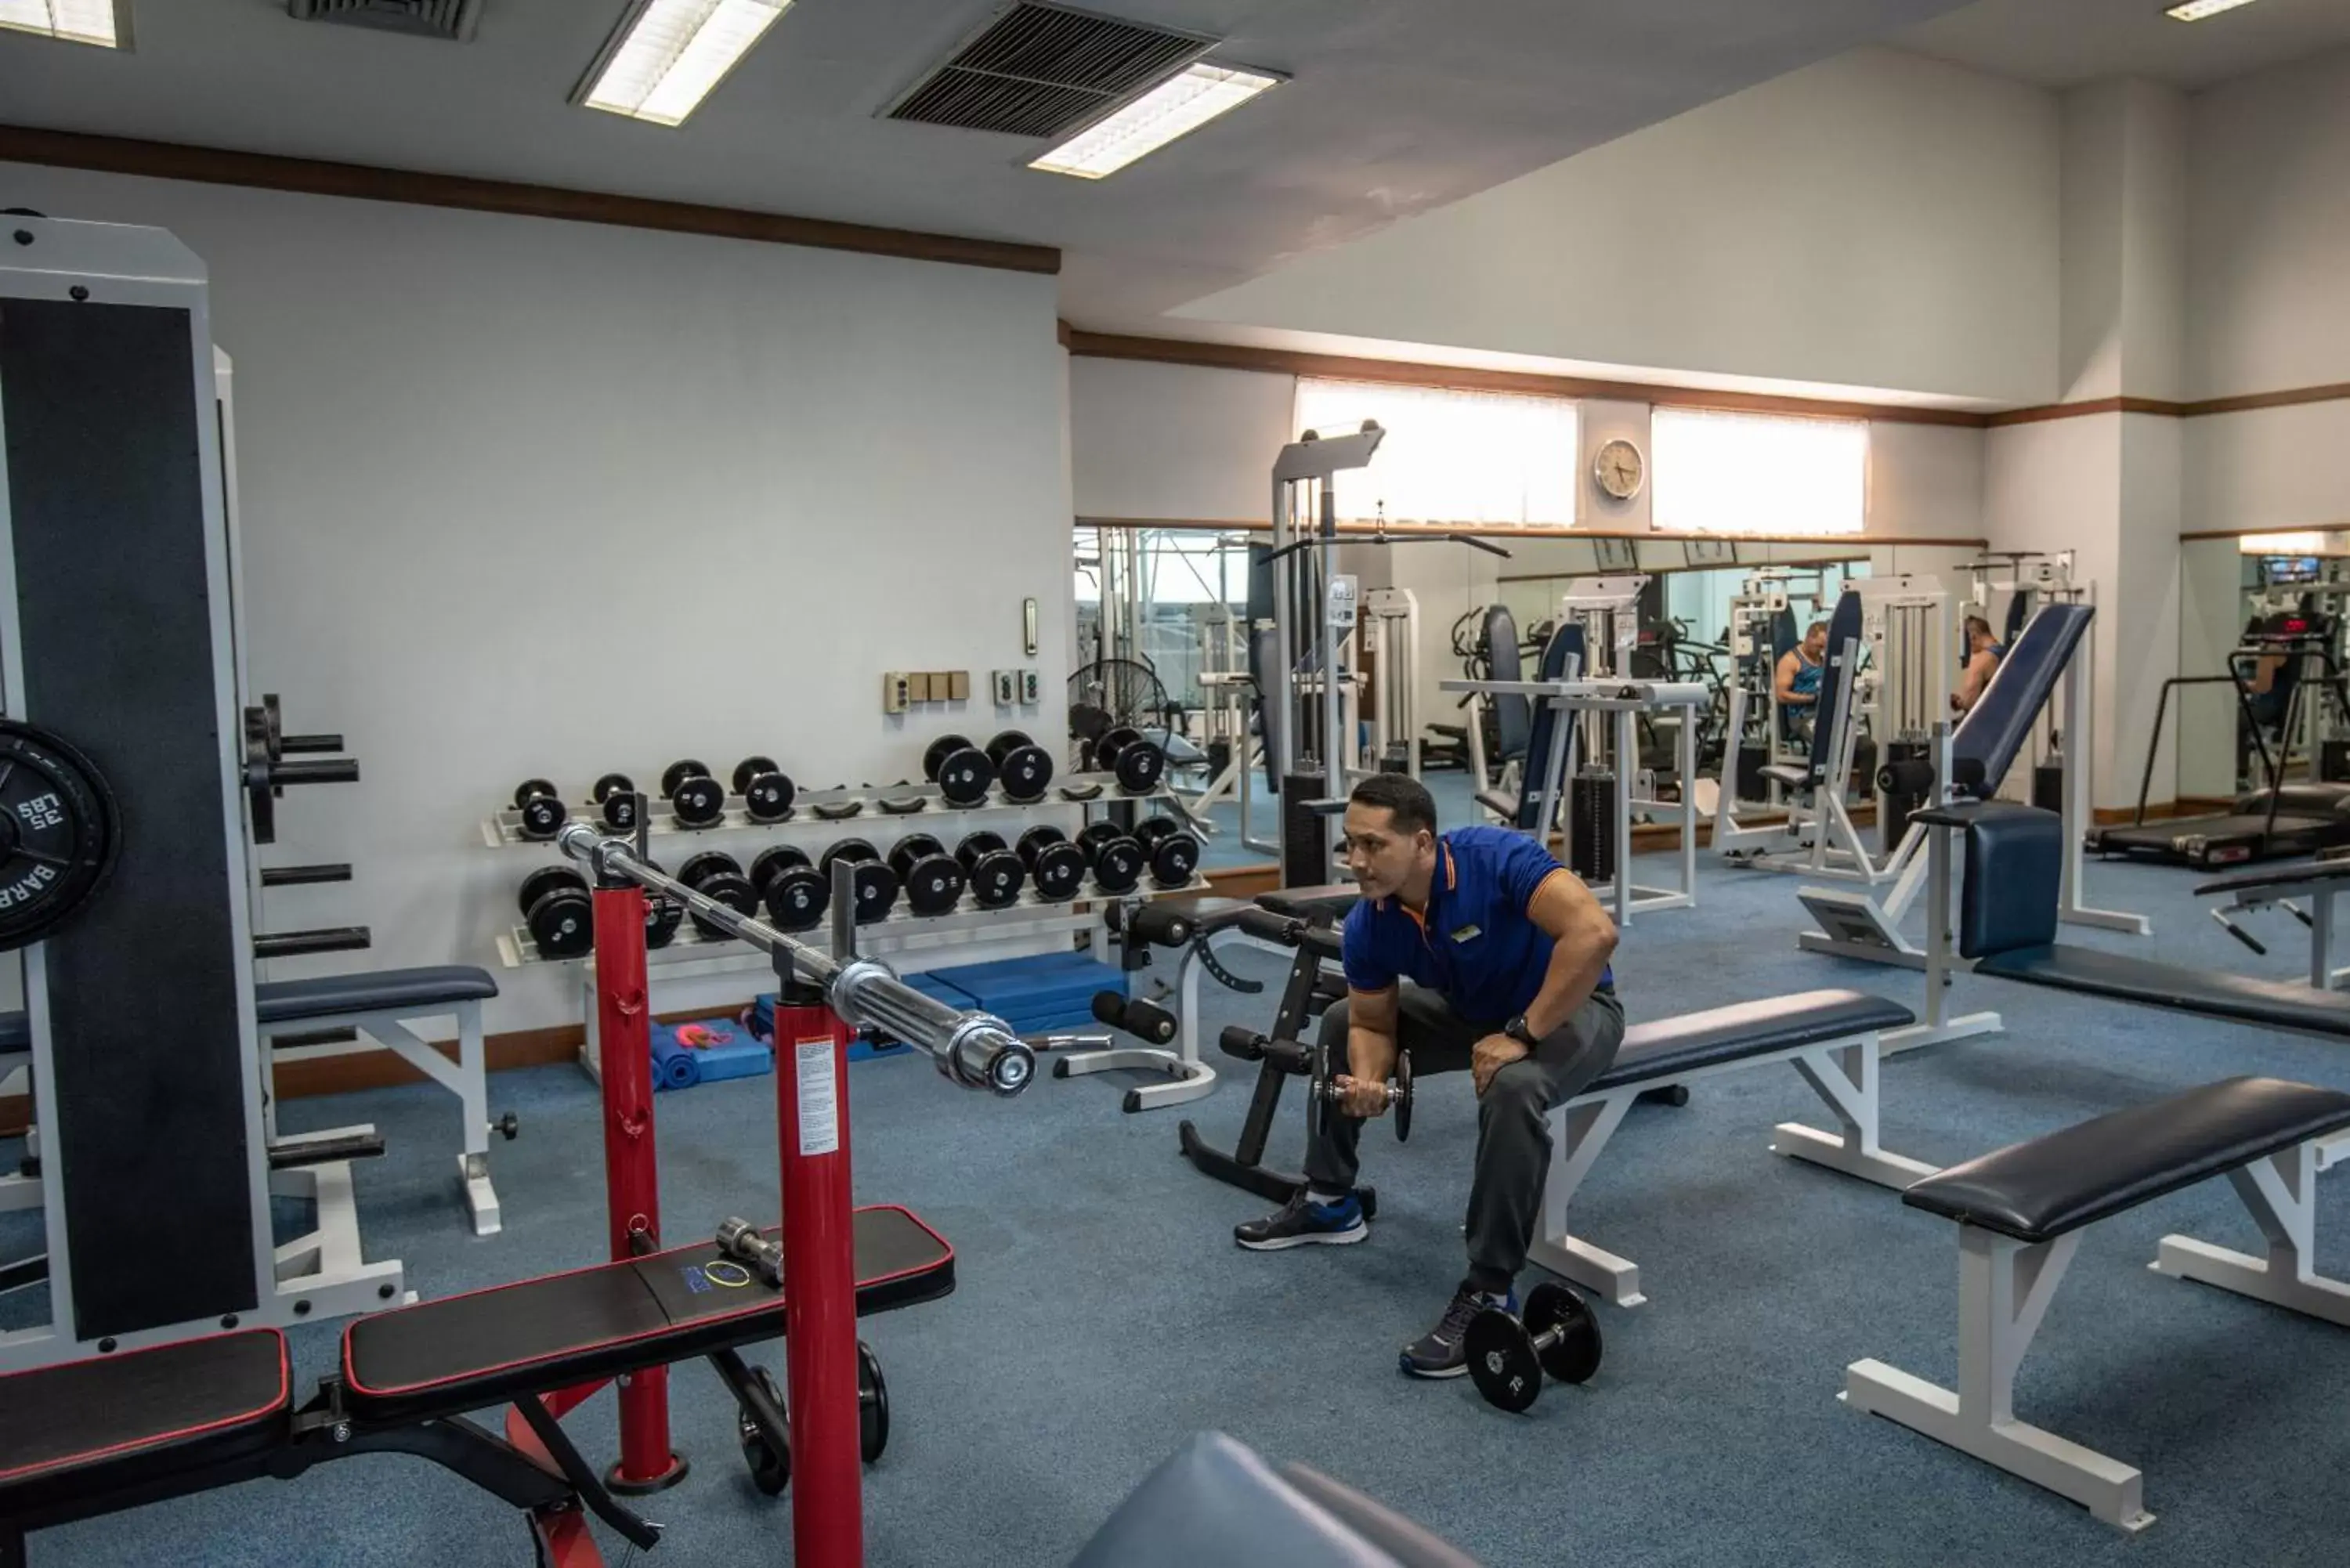 Fitness centre/facilities, Fitness Center/Facilities in Montien Riverside Hotel Bangkok